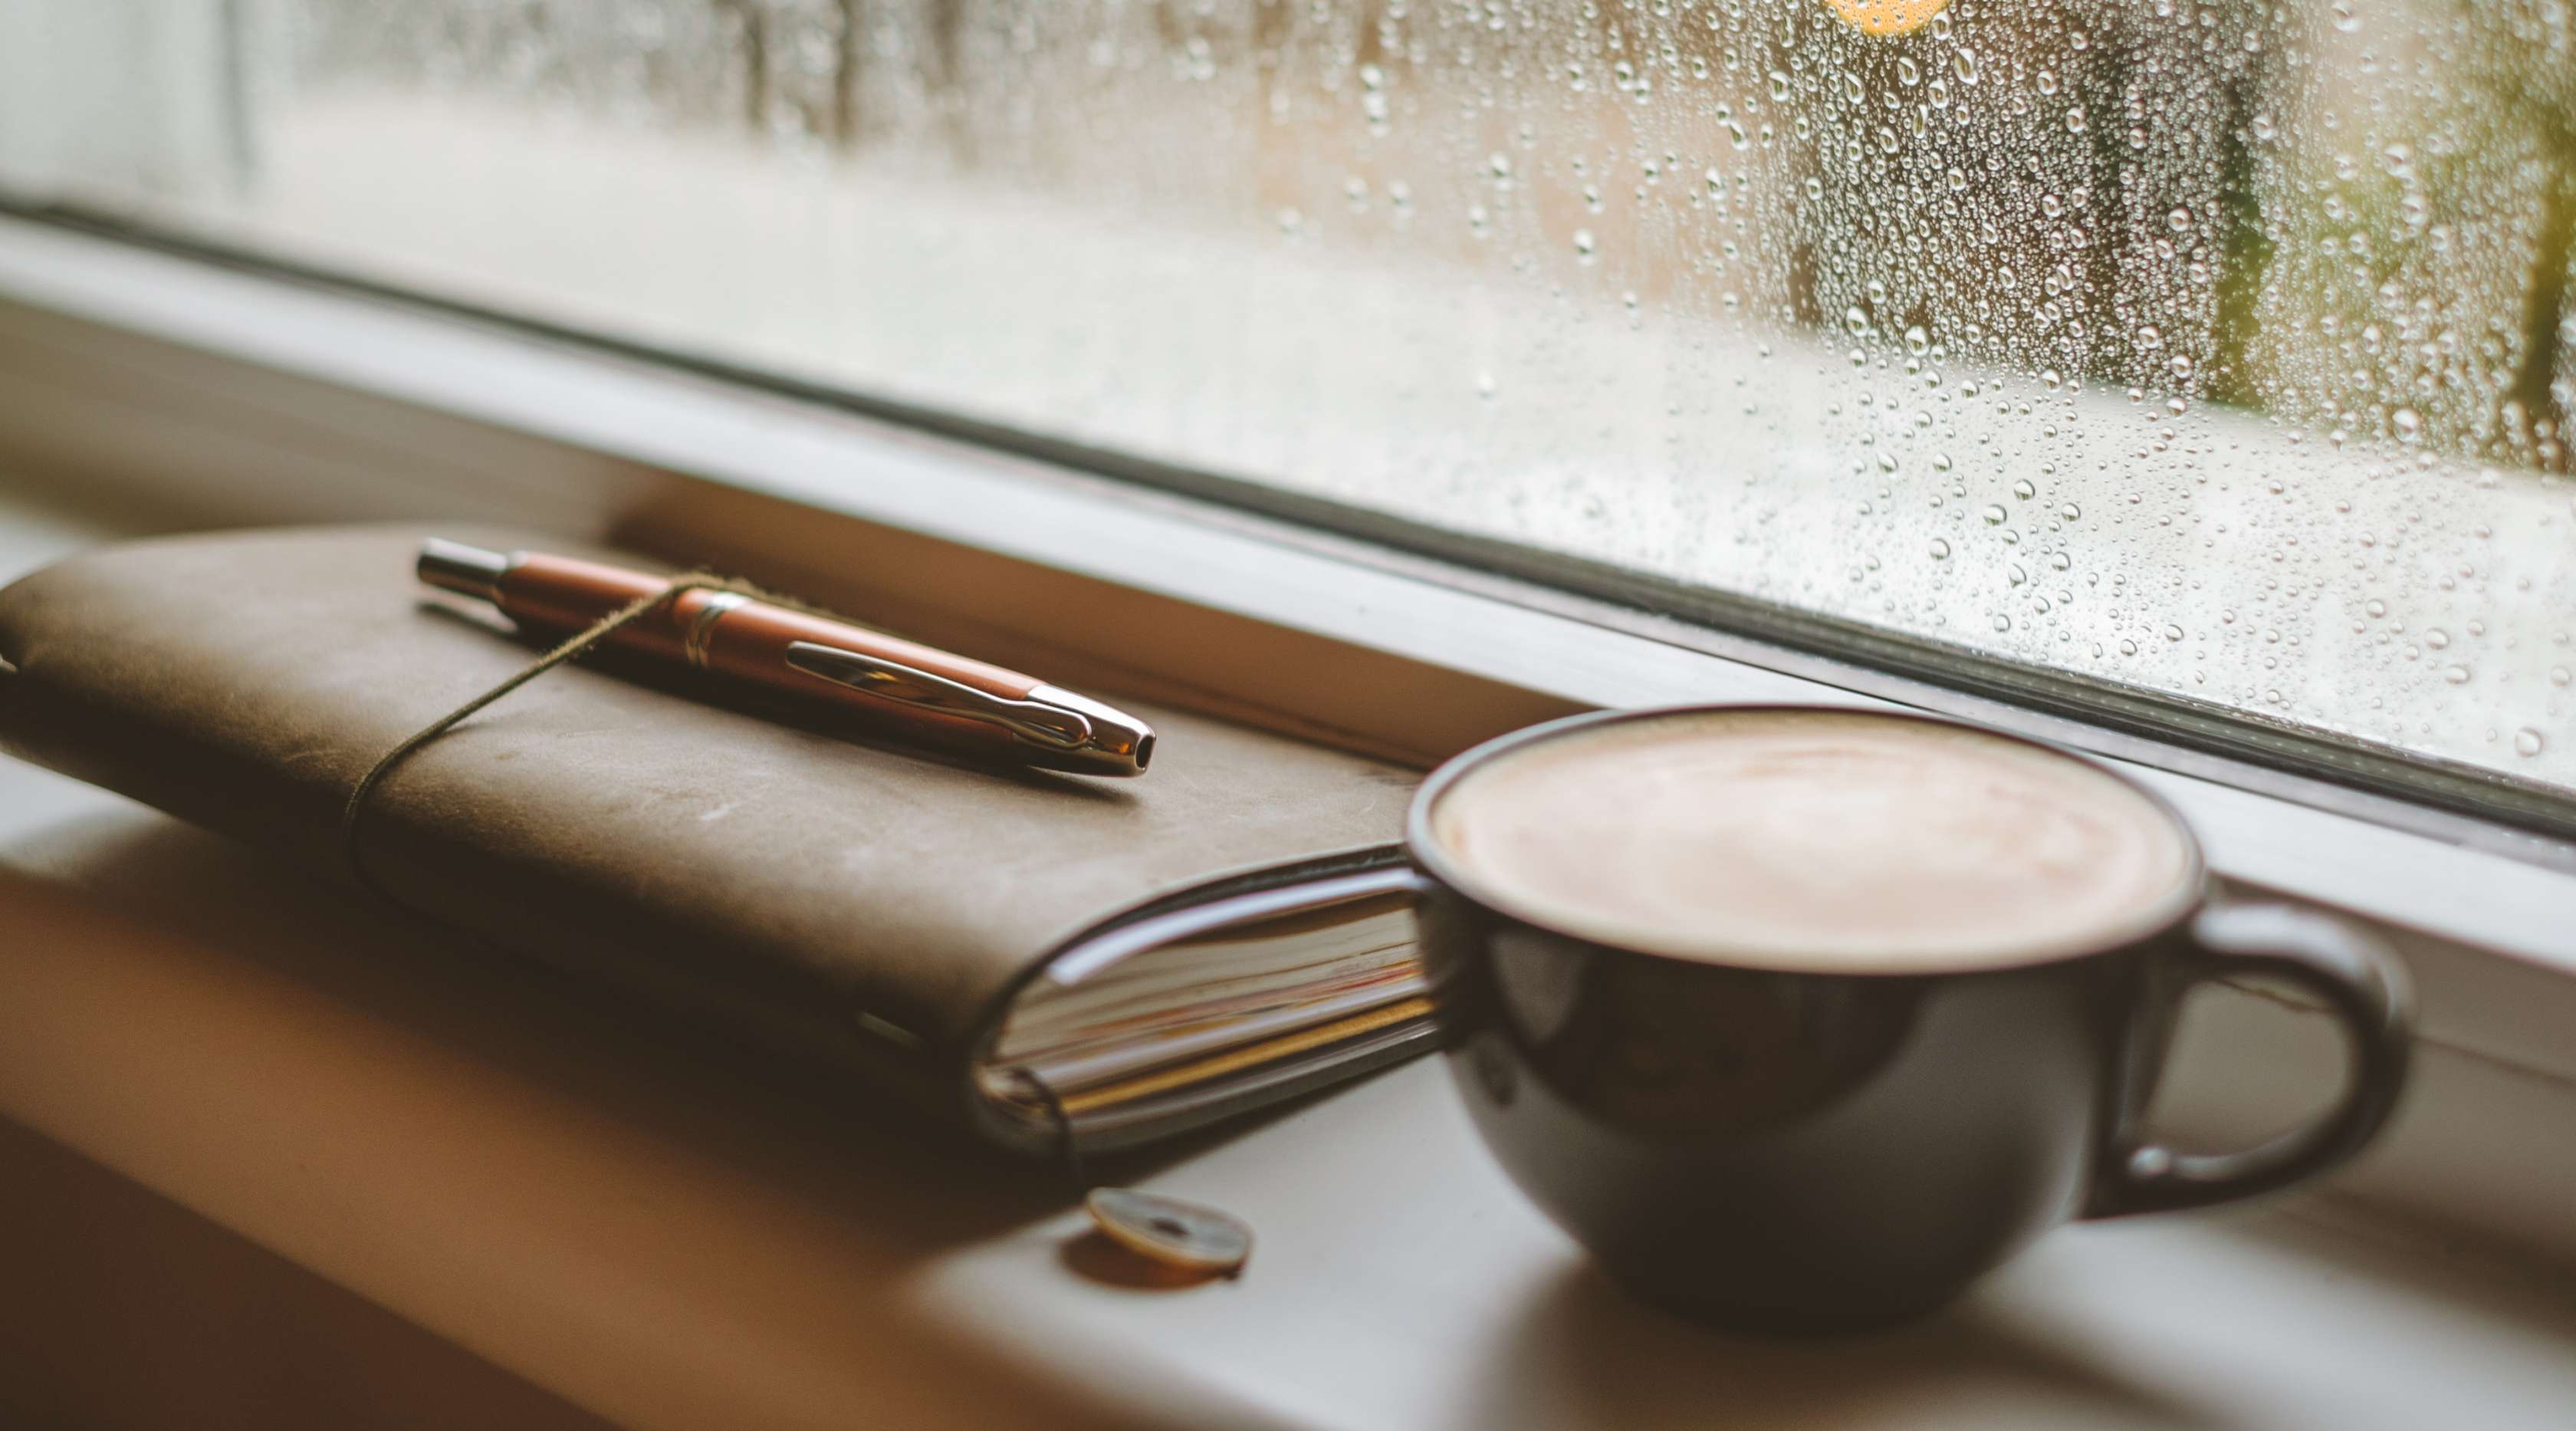 Kaffee und ledernes Notizbuch auf einer Fensterbank